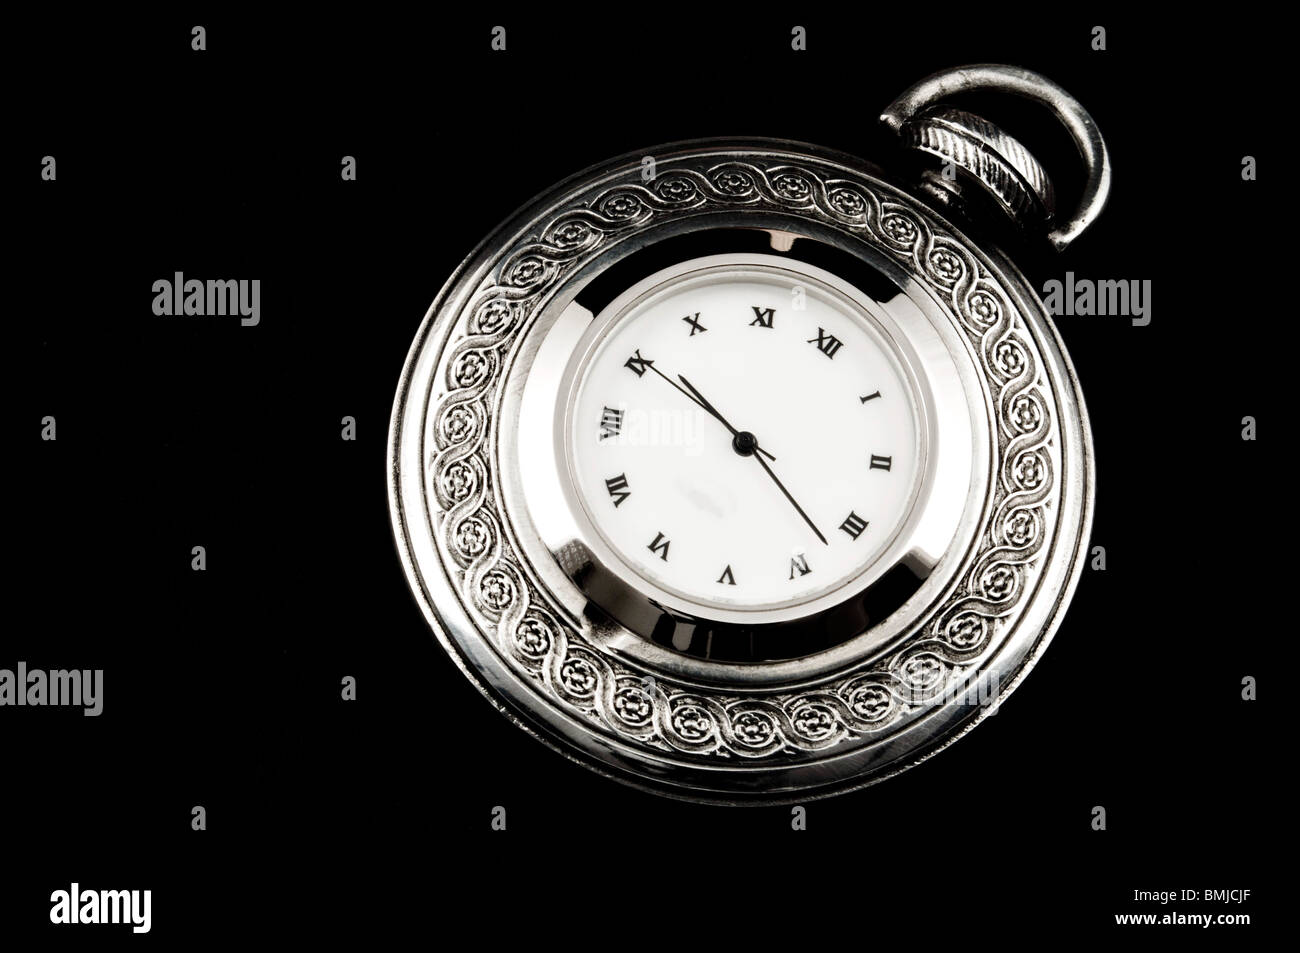 Elegante acciaio intagliato orologio da tasca, isolato su nero Foto Stock